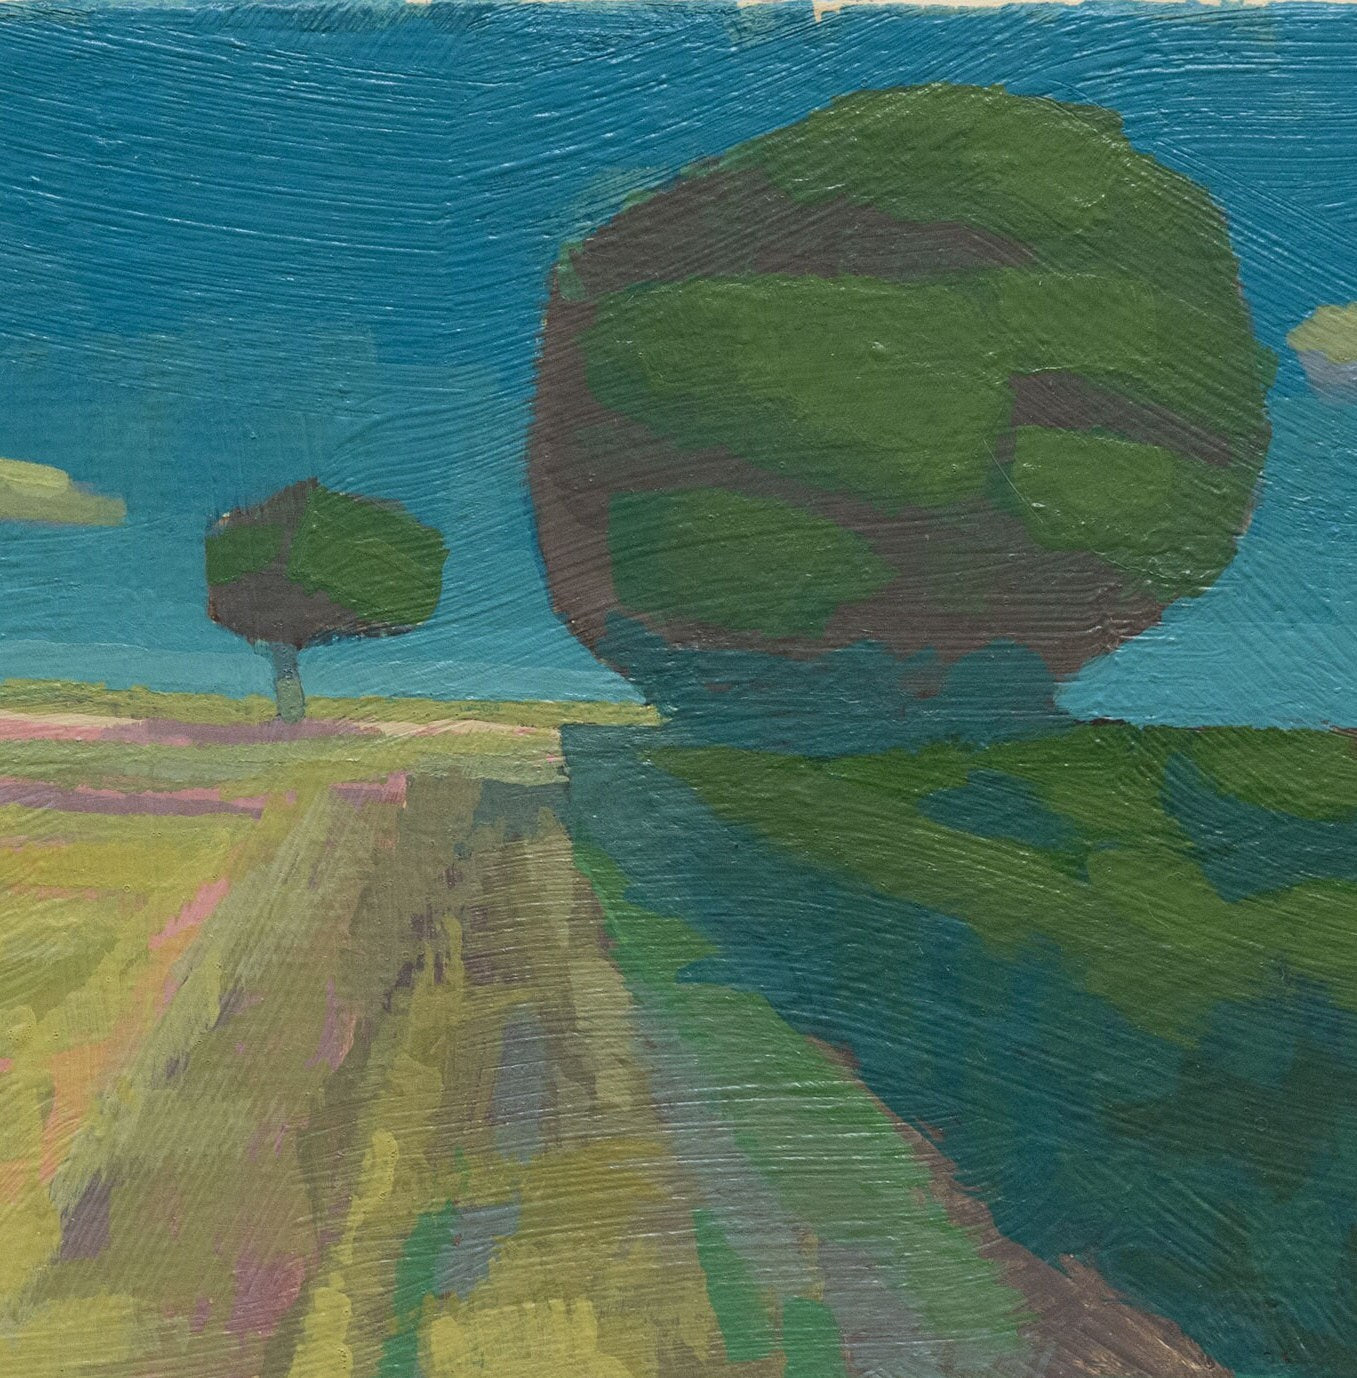 Original Gemälde – "Zwei Bäume" - handgemalt – Acrylbild – 10x15 cm – Landschaft Bild – Einzelstück – mit Rahmen